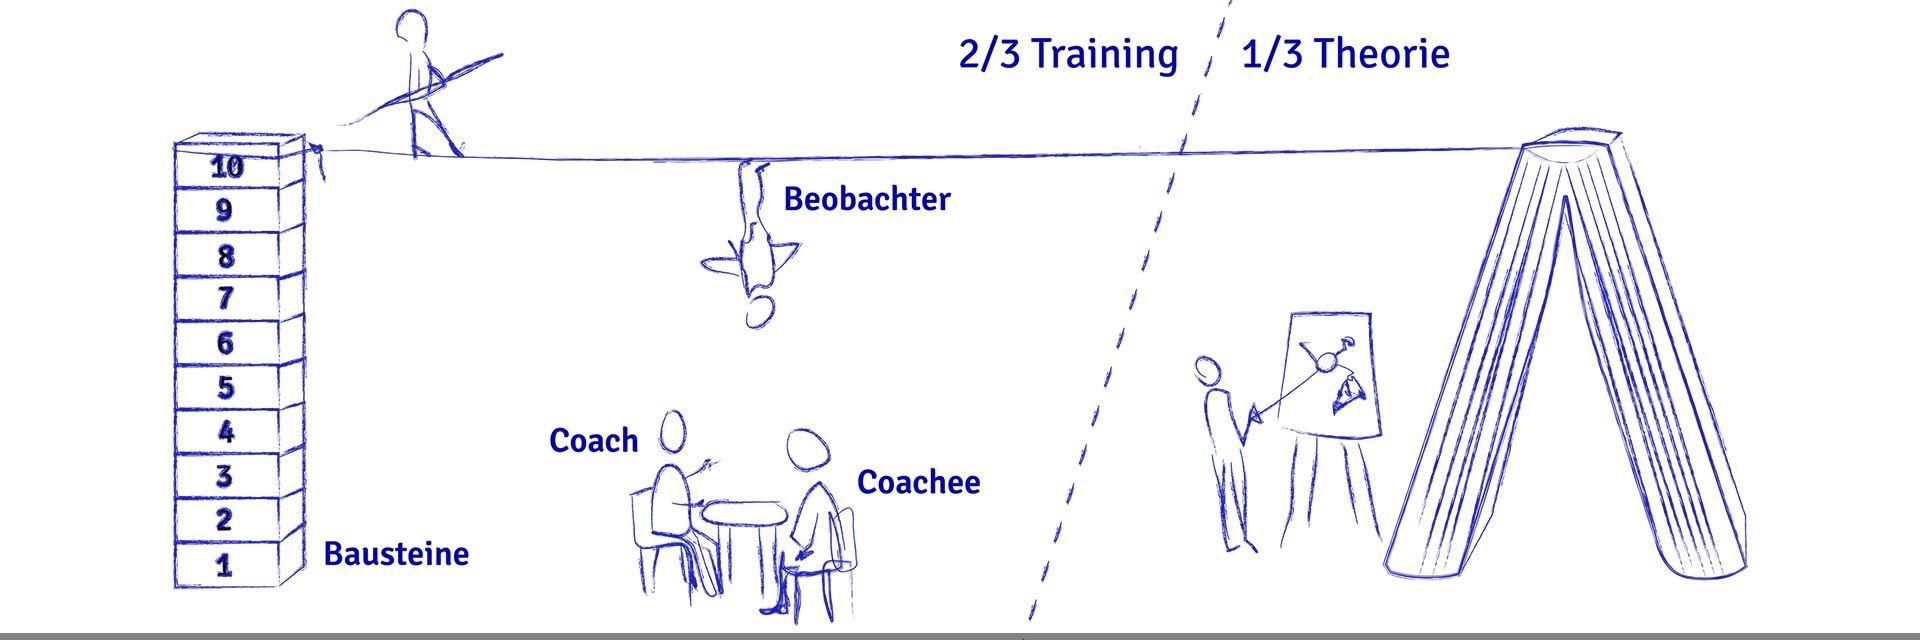 Bild zeigt das Ausbildungsmodell der Coaching Akademie Stuttgart